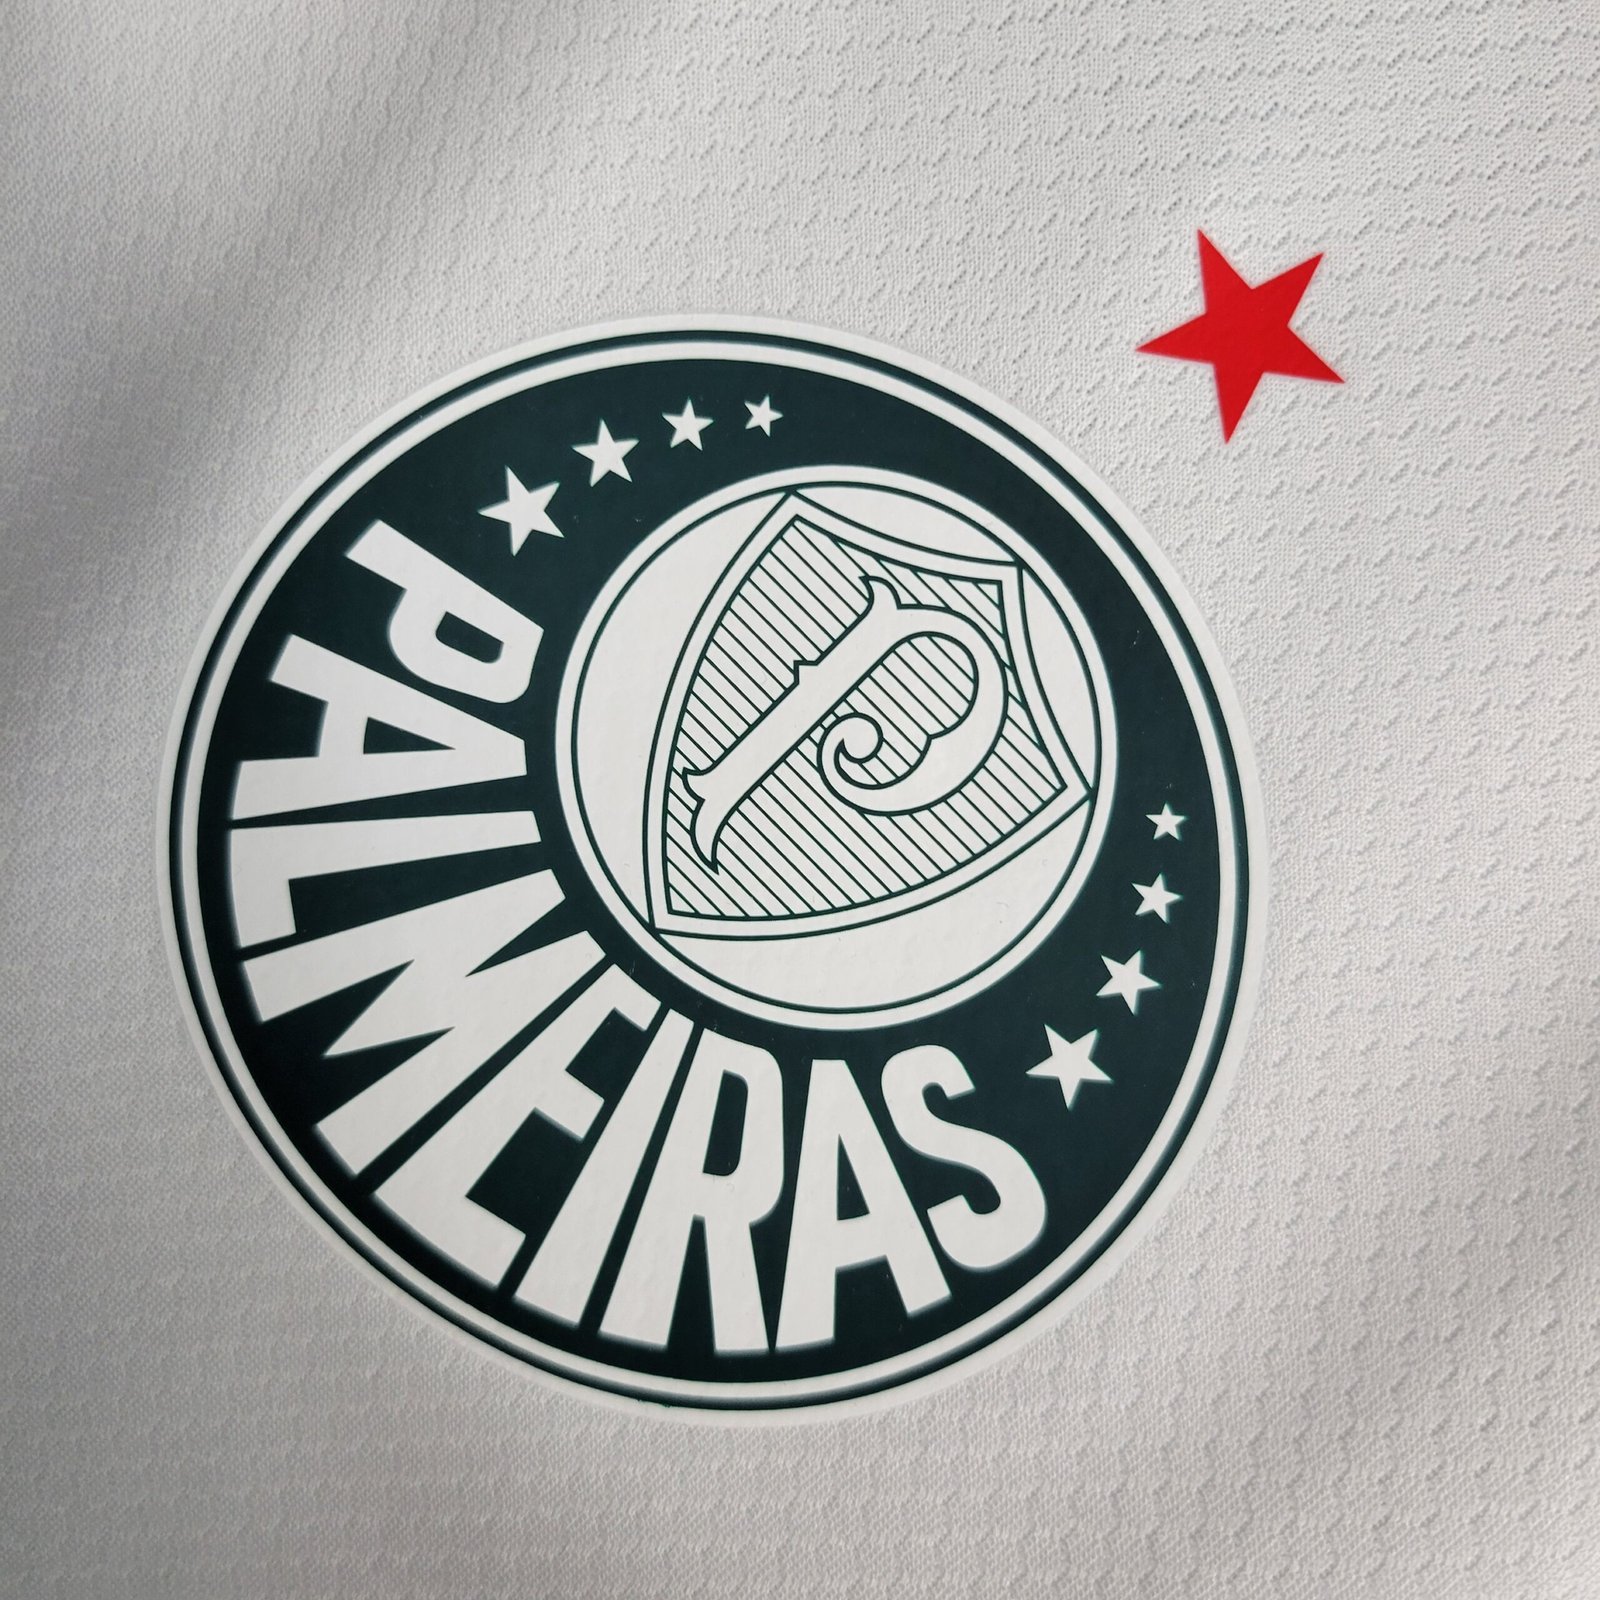 Nova Camisa Palmeiras 2 Branca com patch libertadores e todos patrocín -  021 Sport, Maior Variedade de Camisas de Futebol